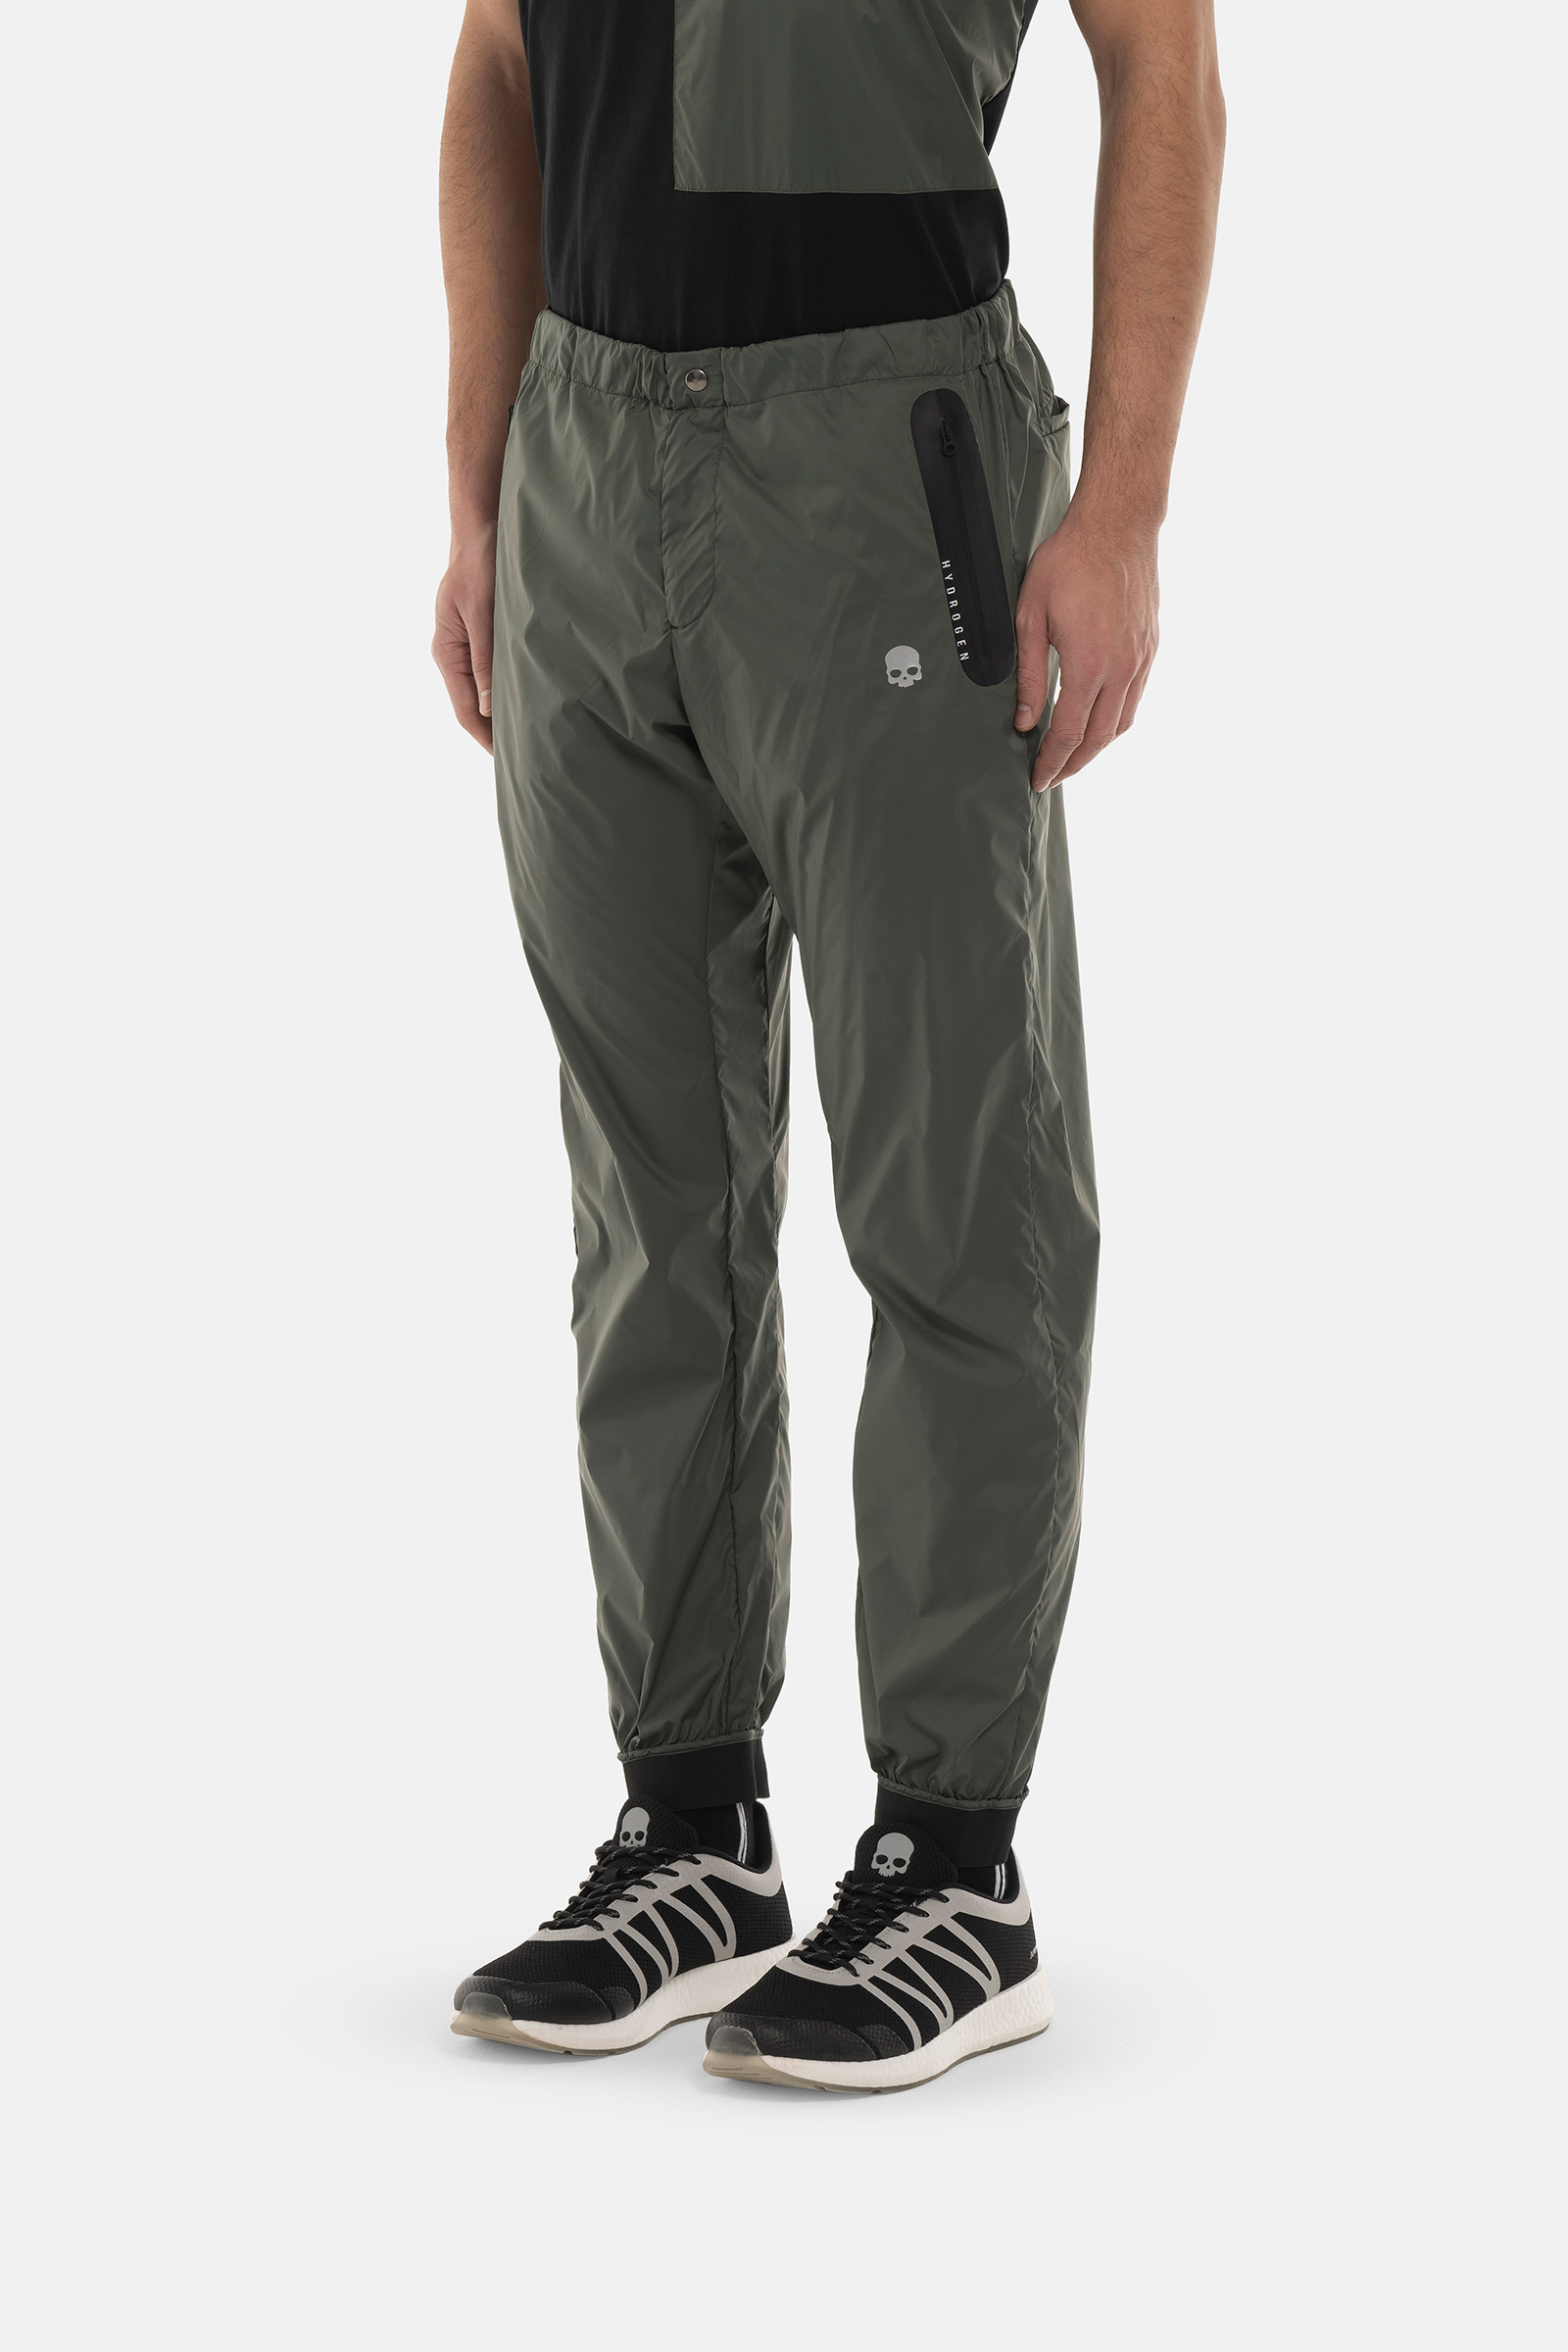 NYLON PANTS - GREEN - Hydrogen - Luxury Sportwear